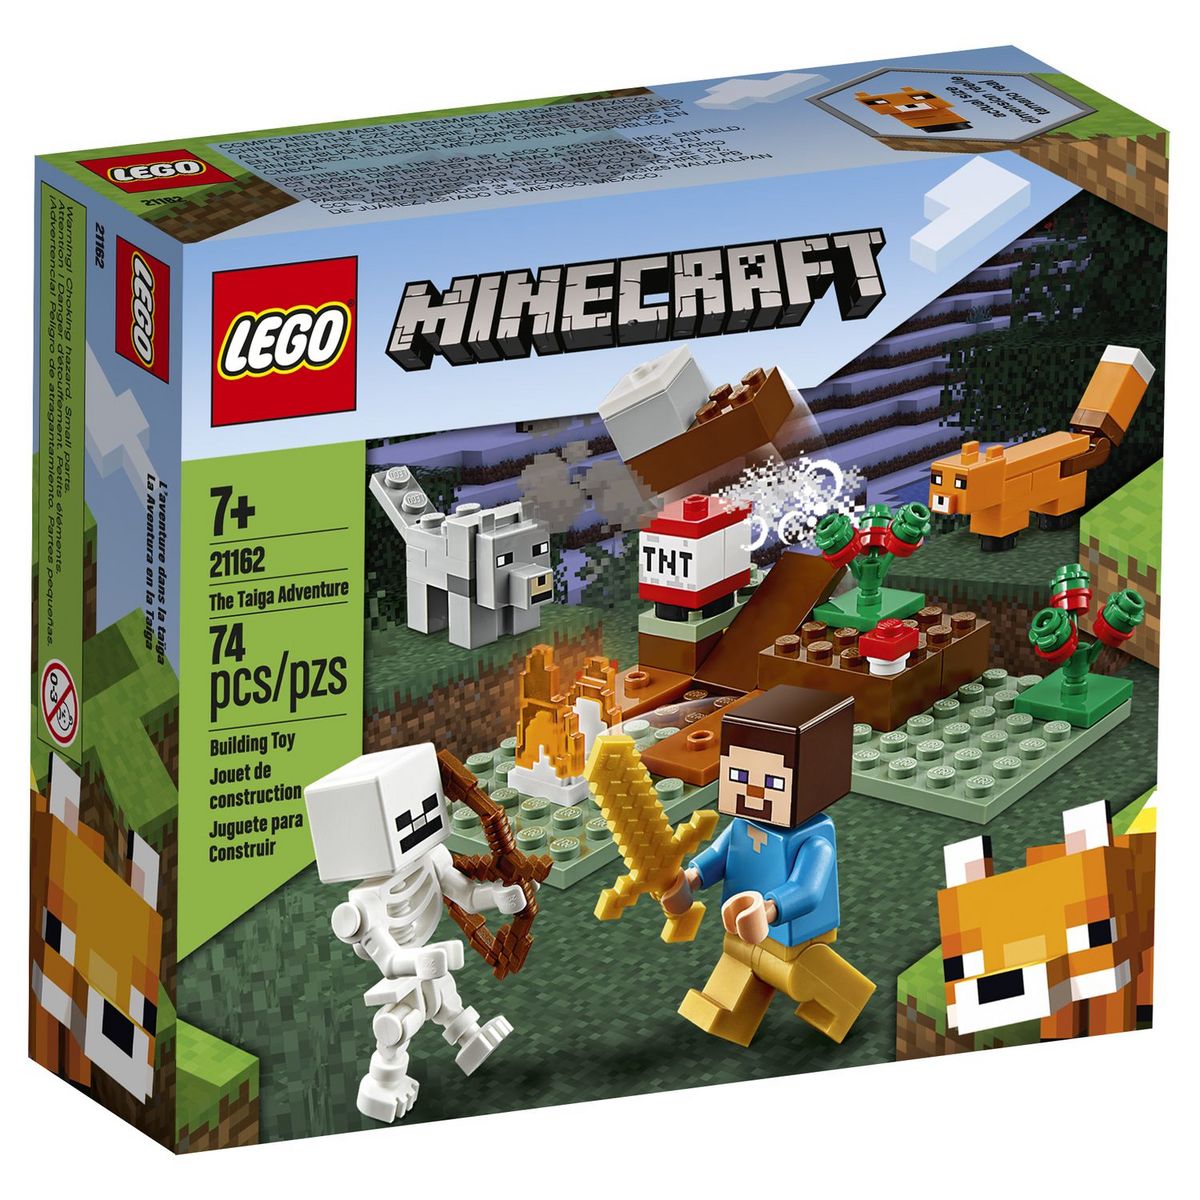 75283 - LEGO® Star Wars - Char d'assaut blindé (AAT™) LEGO : King Jouet,  Lego, briques et blocs LEGO - Jeux de construction